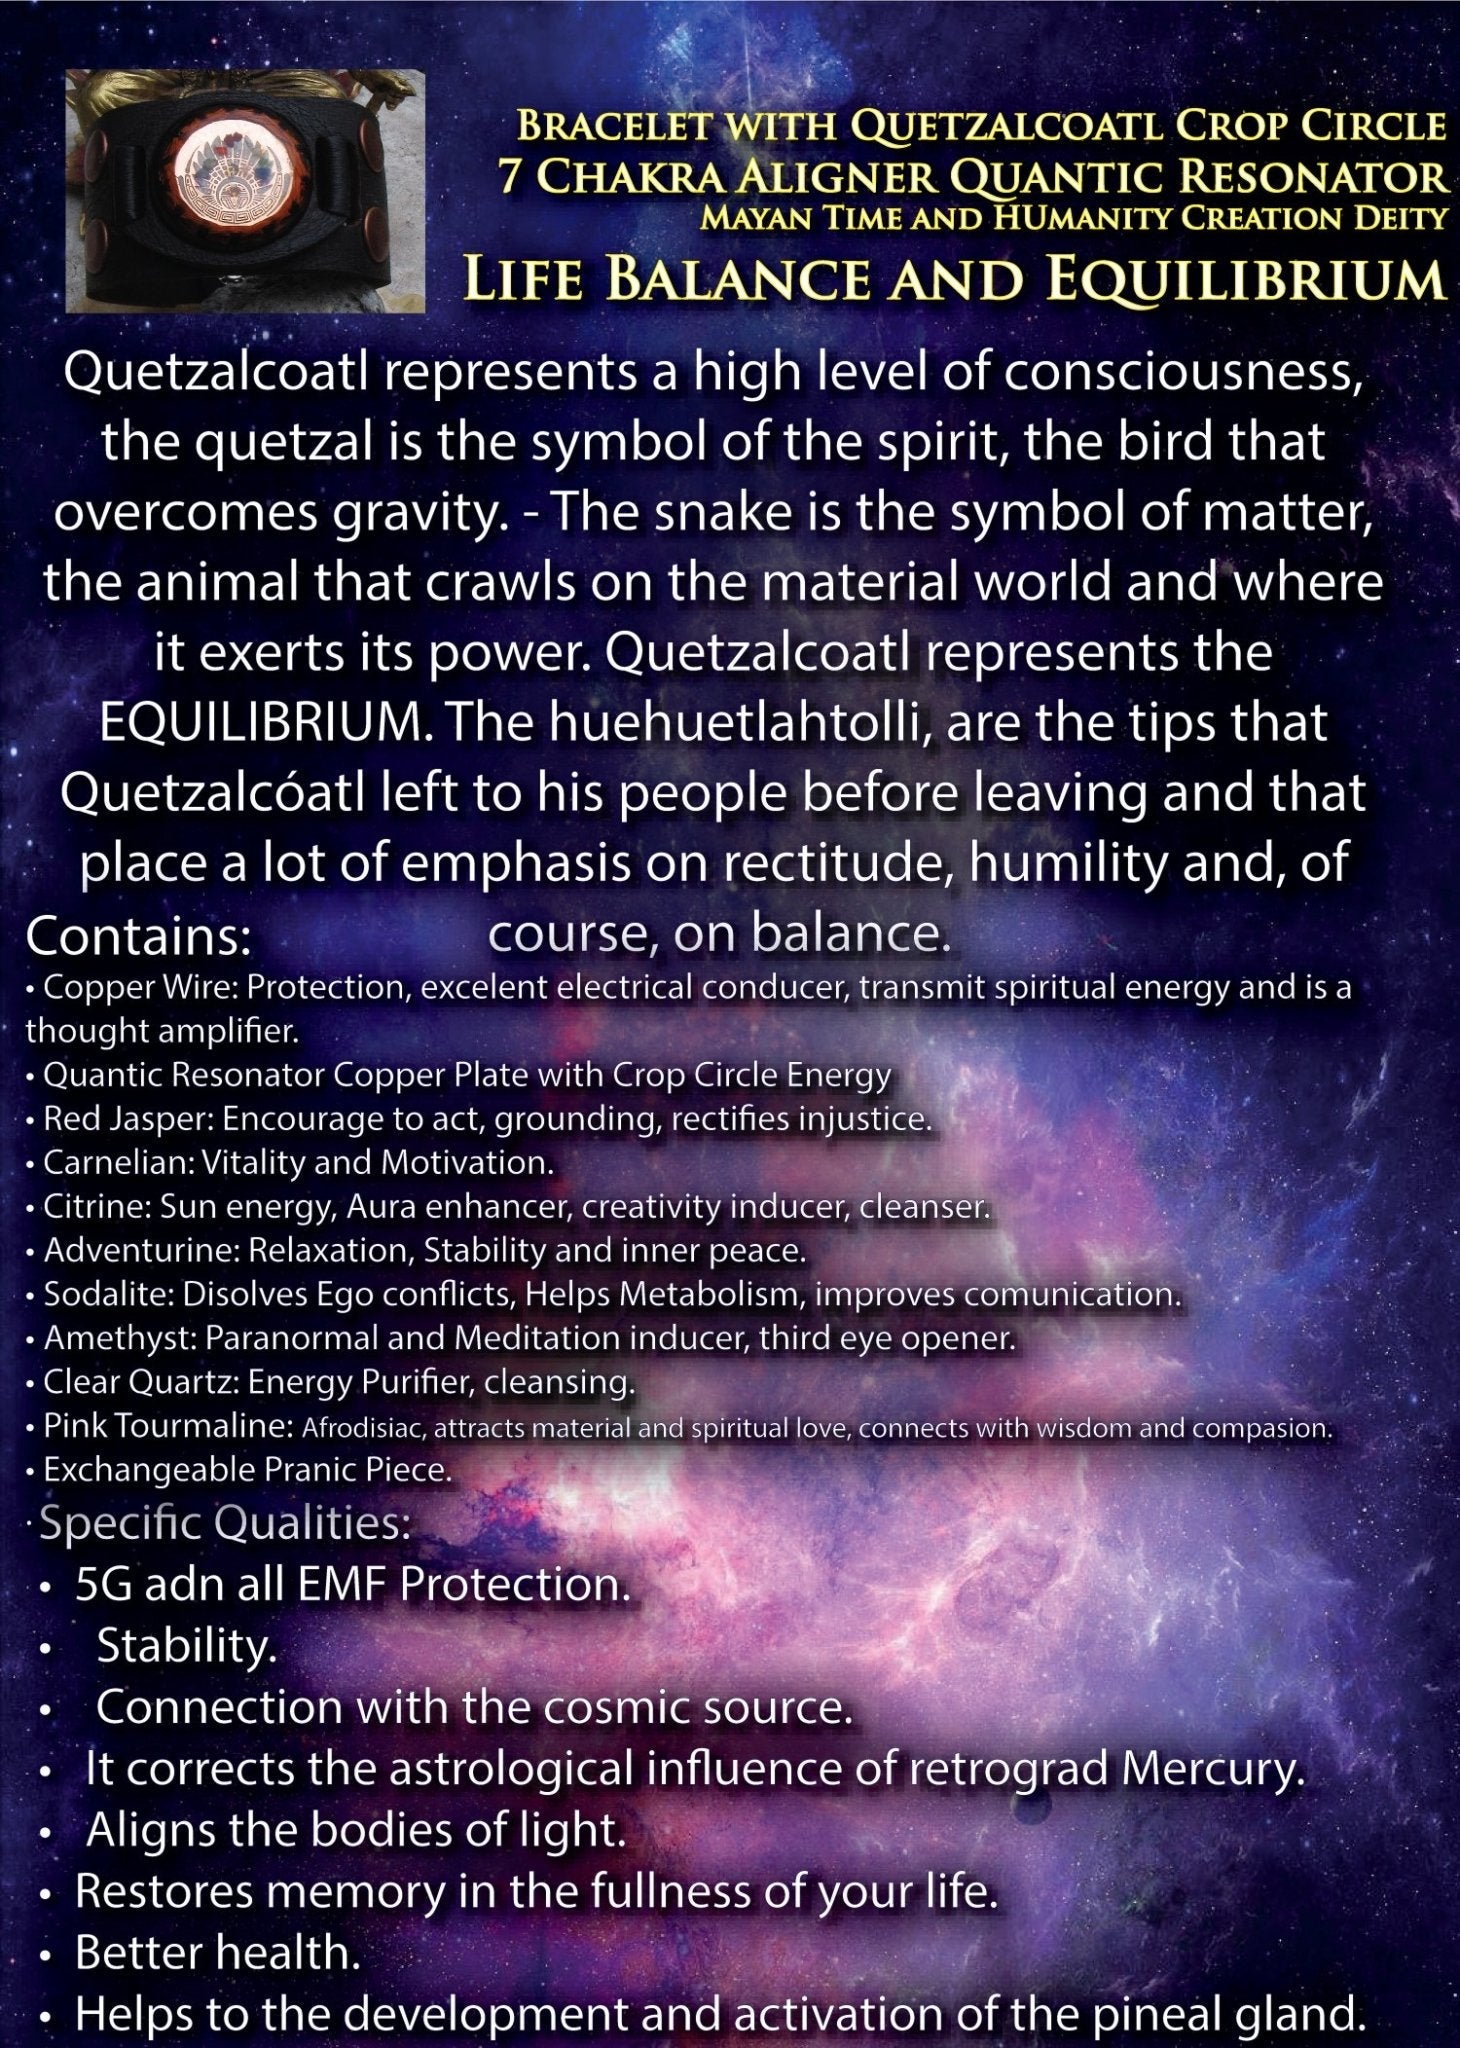 Pulsera con resonador cuántico Quetzalcoatl de 7 Chakras - Metayantra México